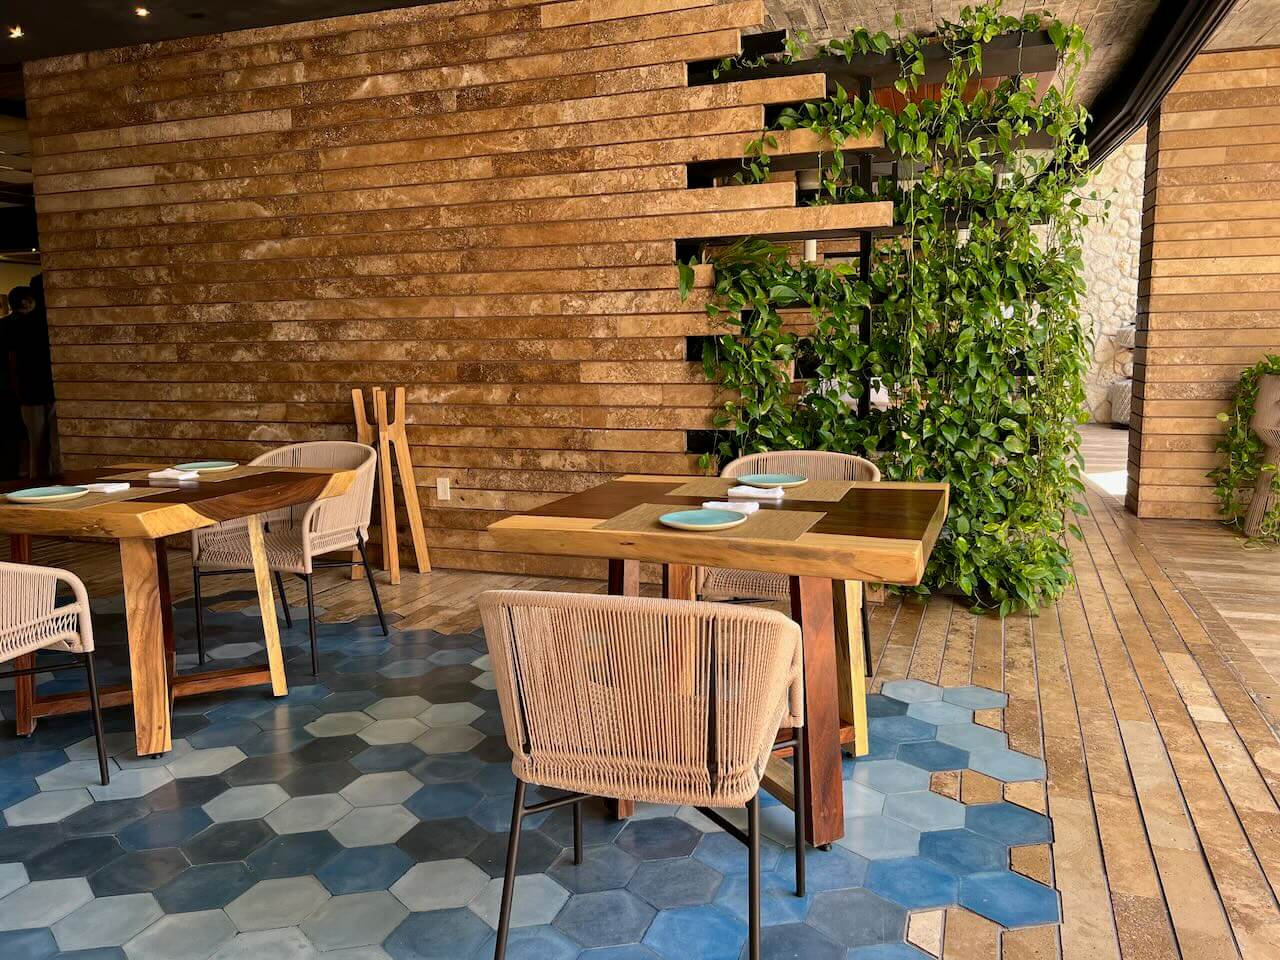 Wood and stone dinning room at Estero at La Casa de la Playa luxury hotel in Mexico.